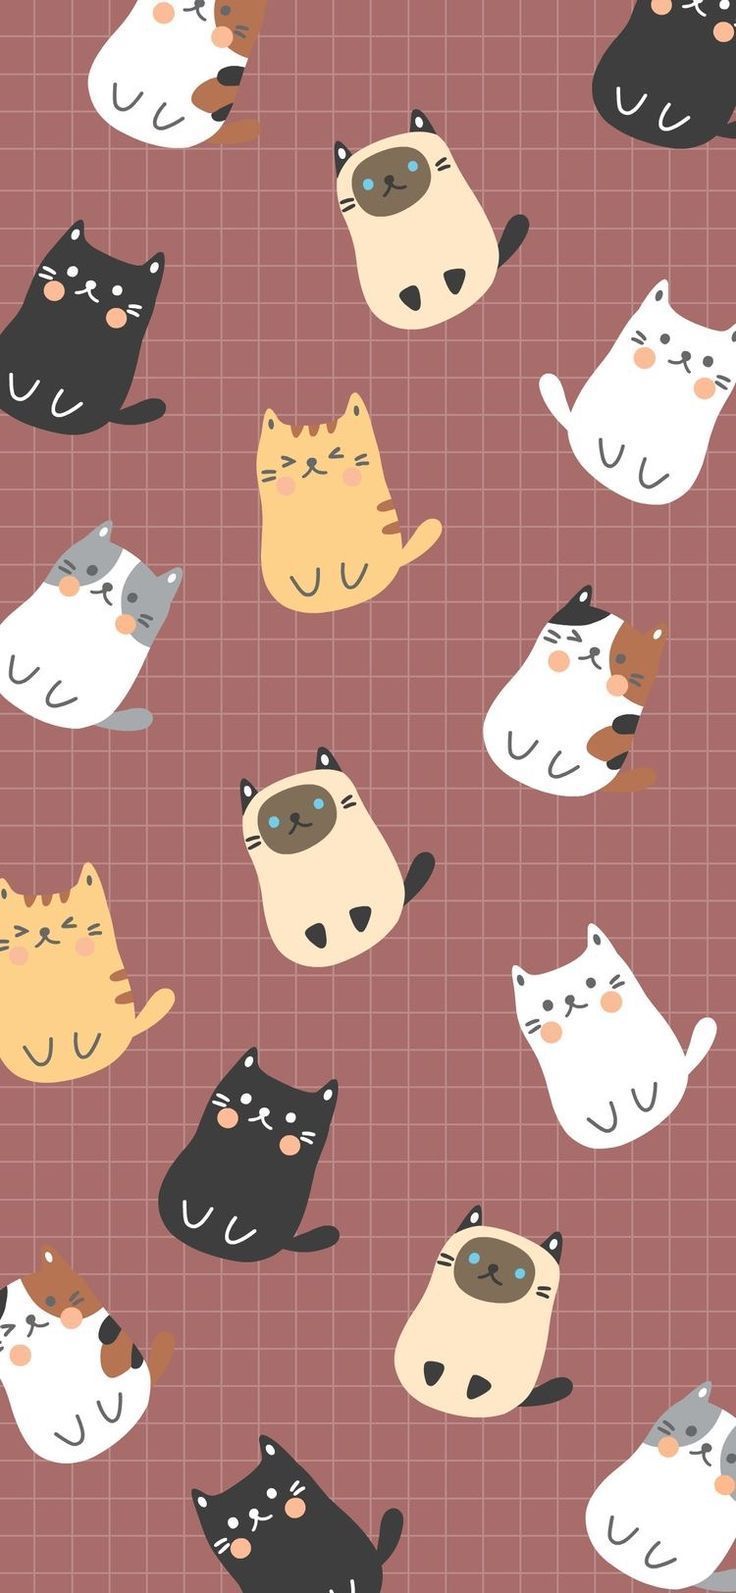 Cat Cute Wallpaper iPhone #wallpaper 804948133381829259 in 2020